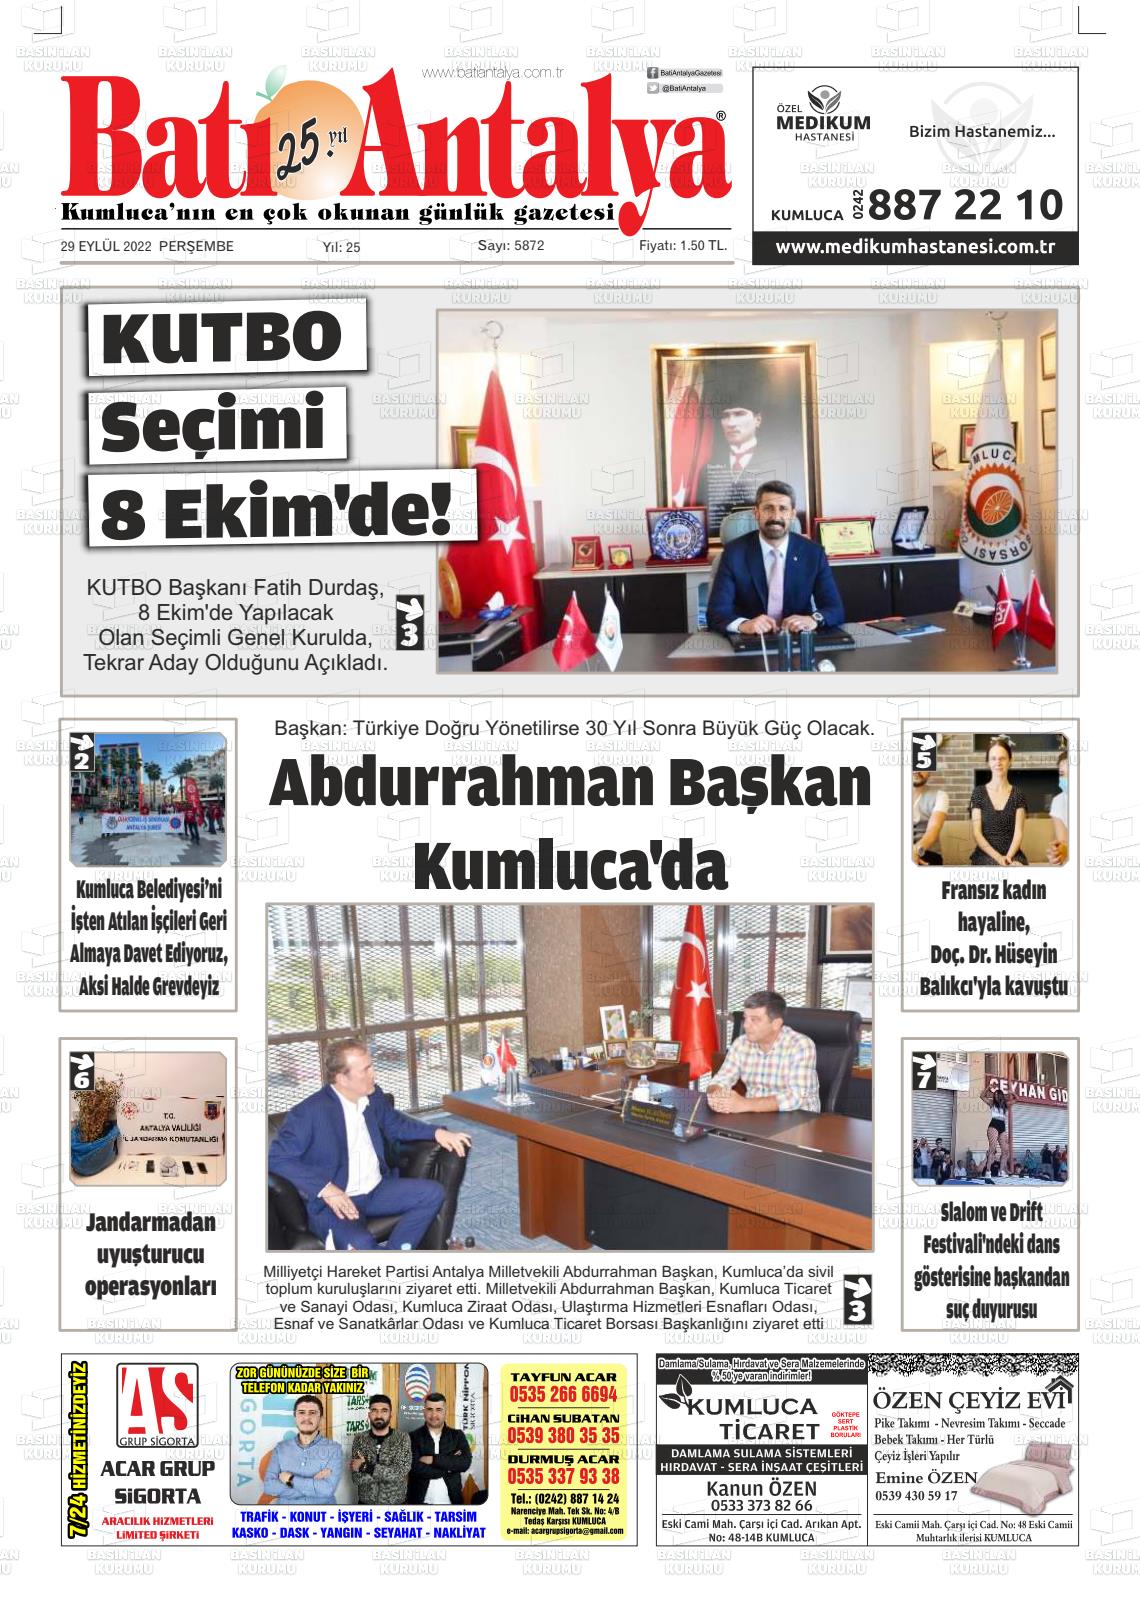 29 Eylül 2022 Batı Antalya Gazete Manşeti